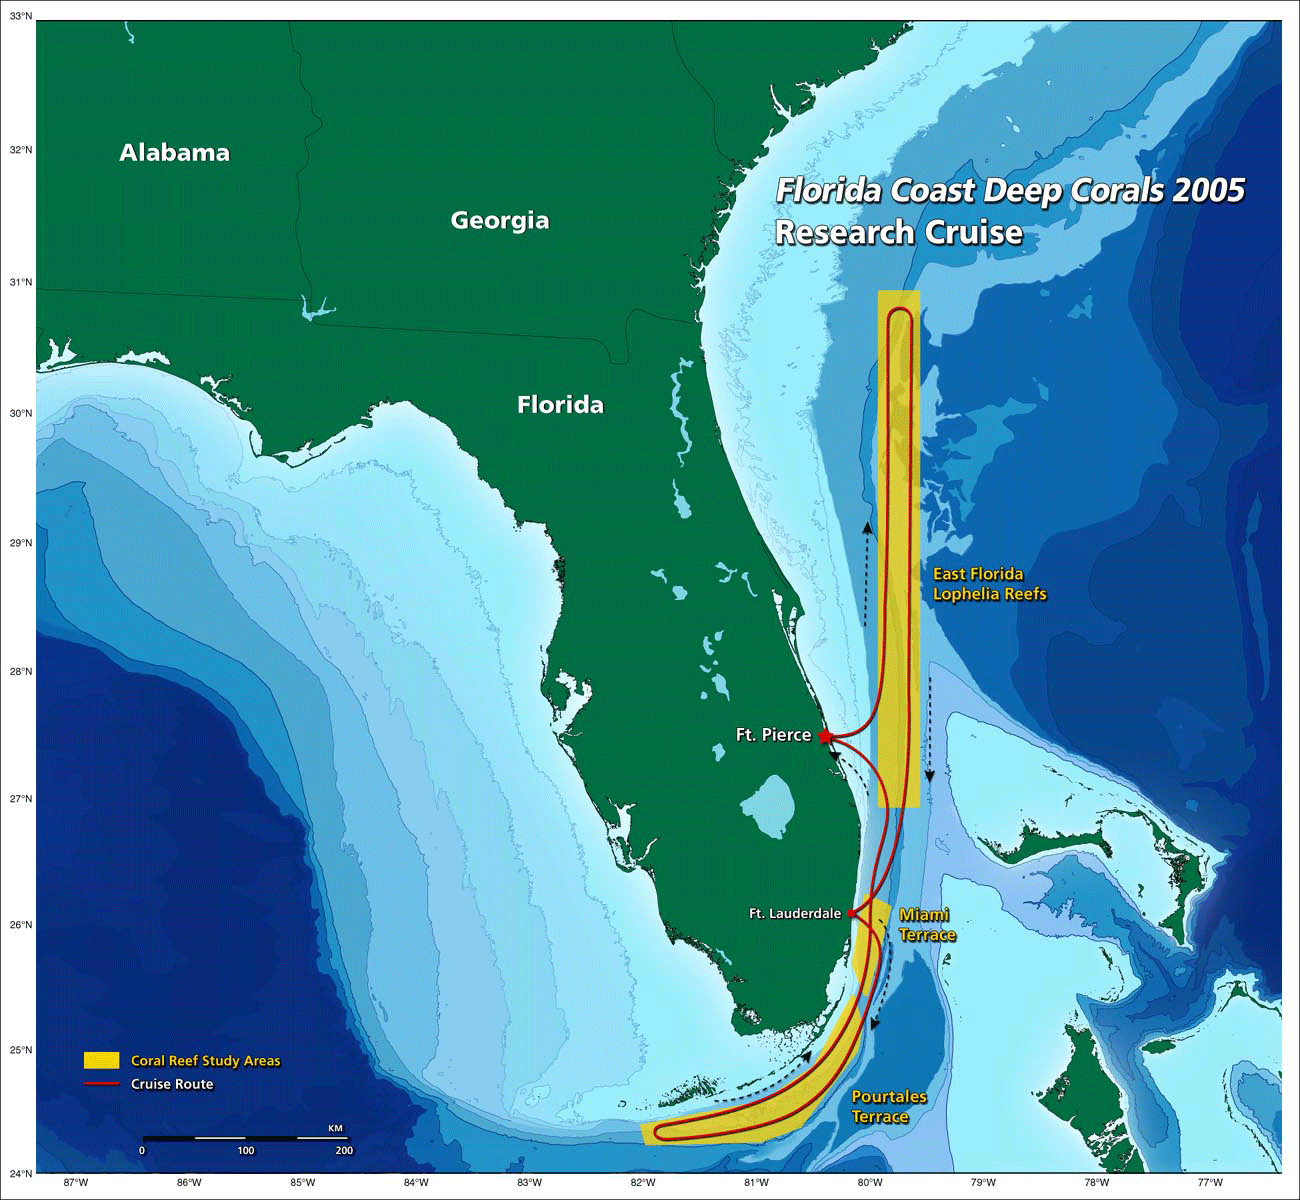 NOAA Ocean Explorer Florida Coast Deep Corals 2005